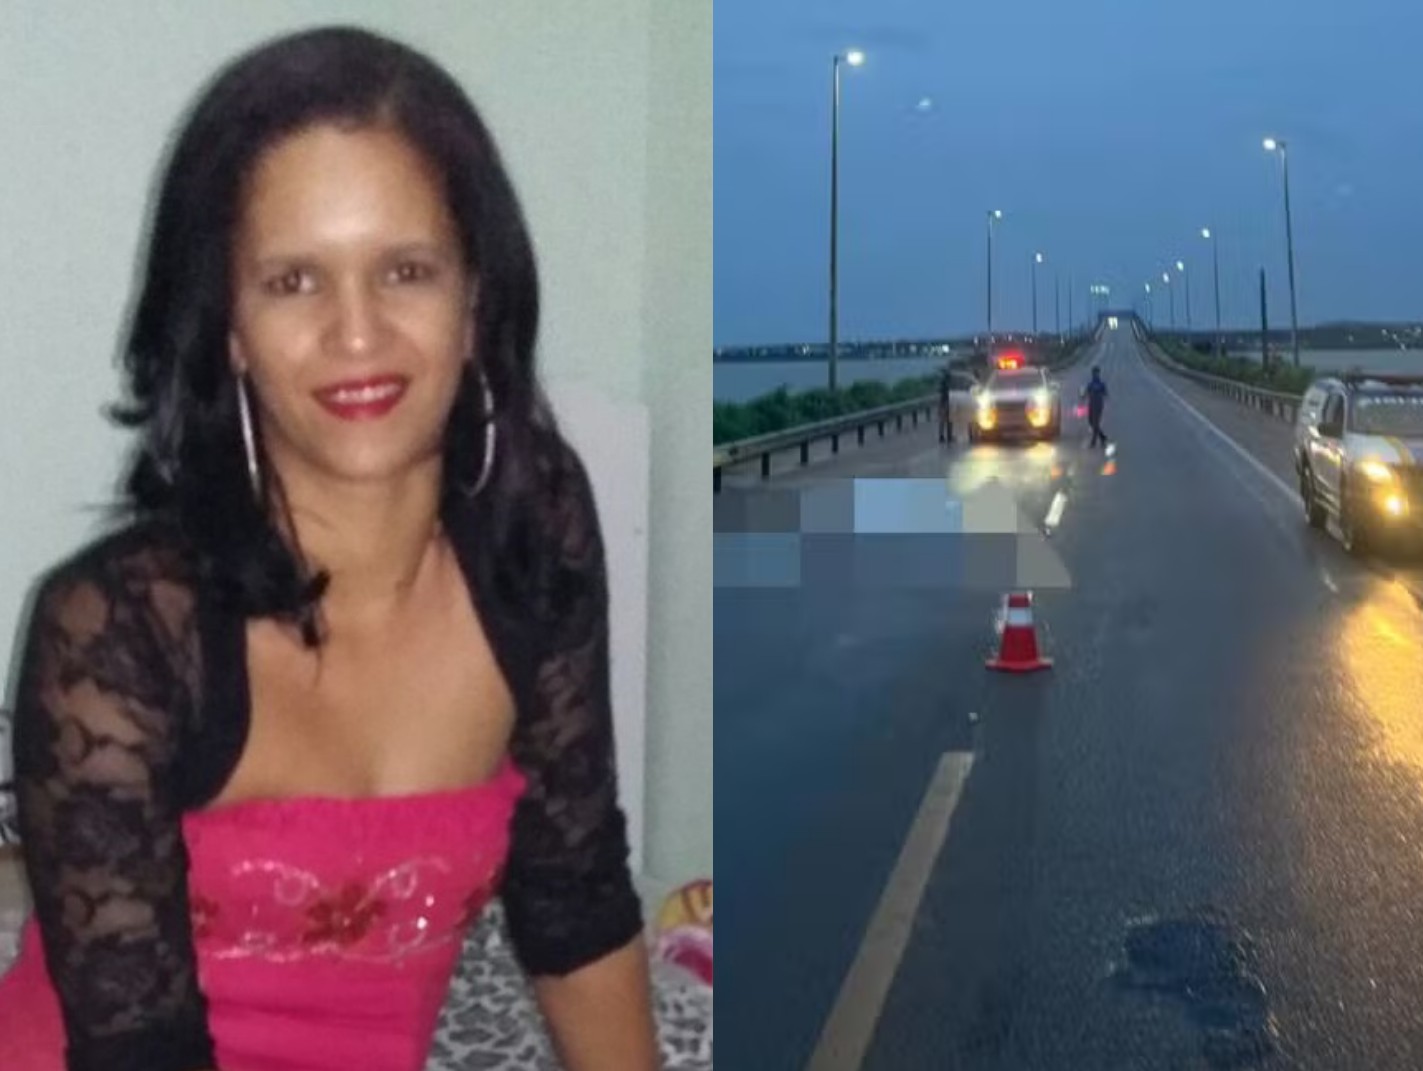 Mulher encontrada morta em ponte de Palmas ia começar novo emprego, diz irmã